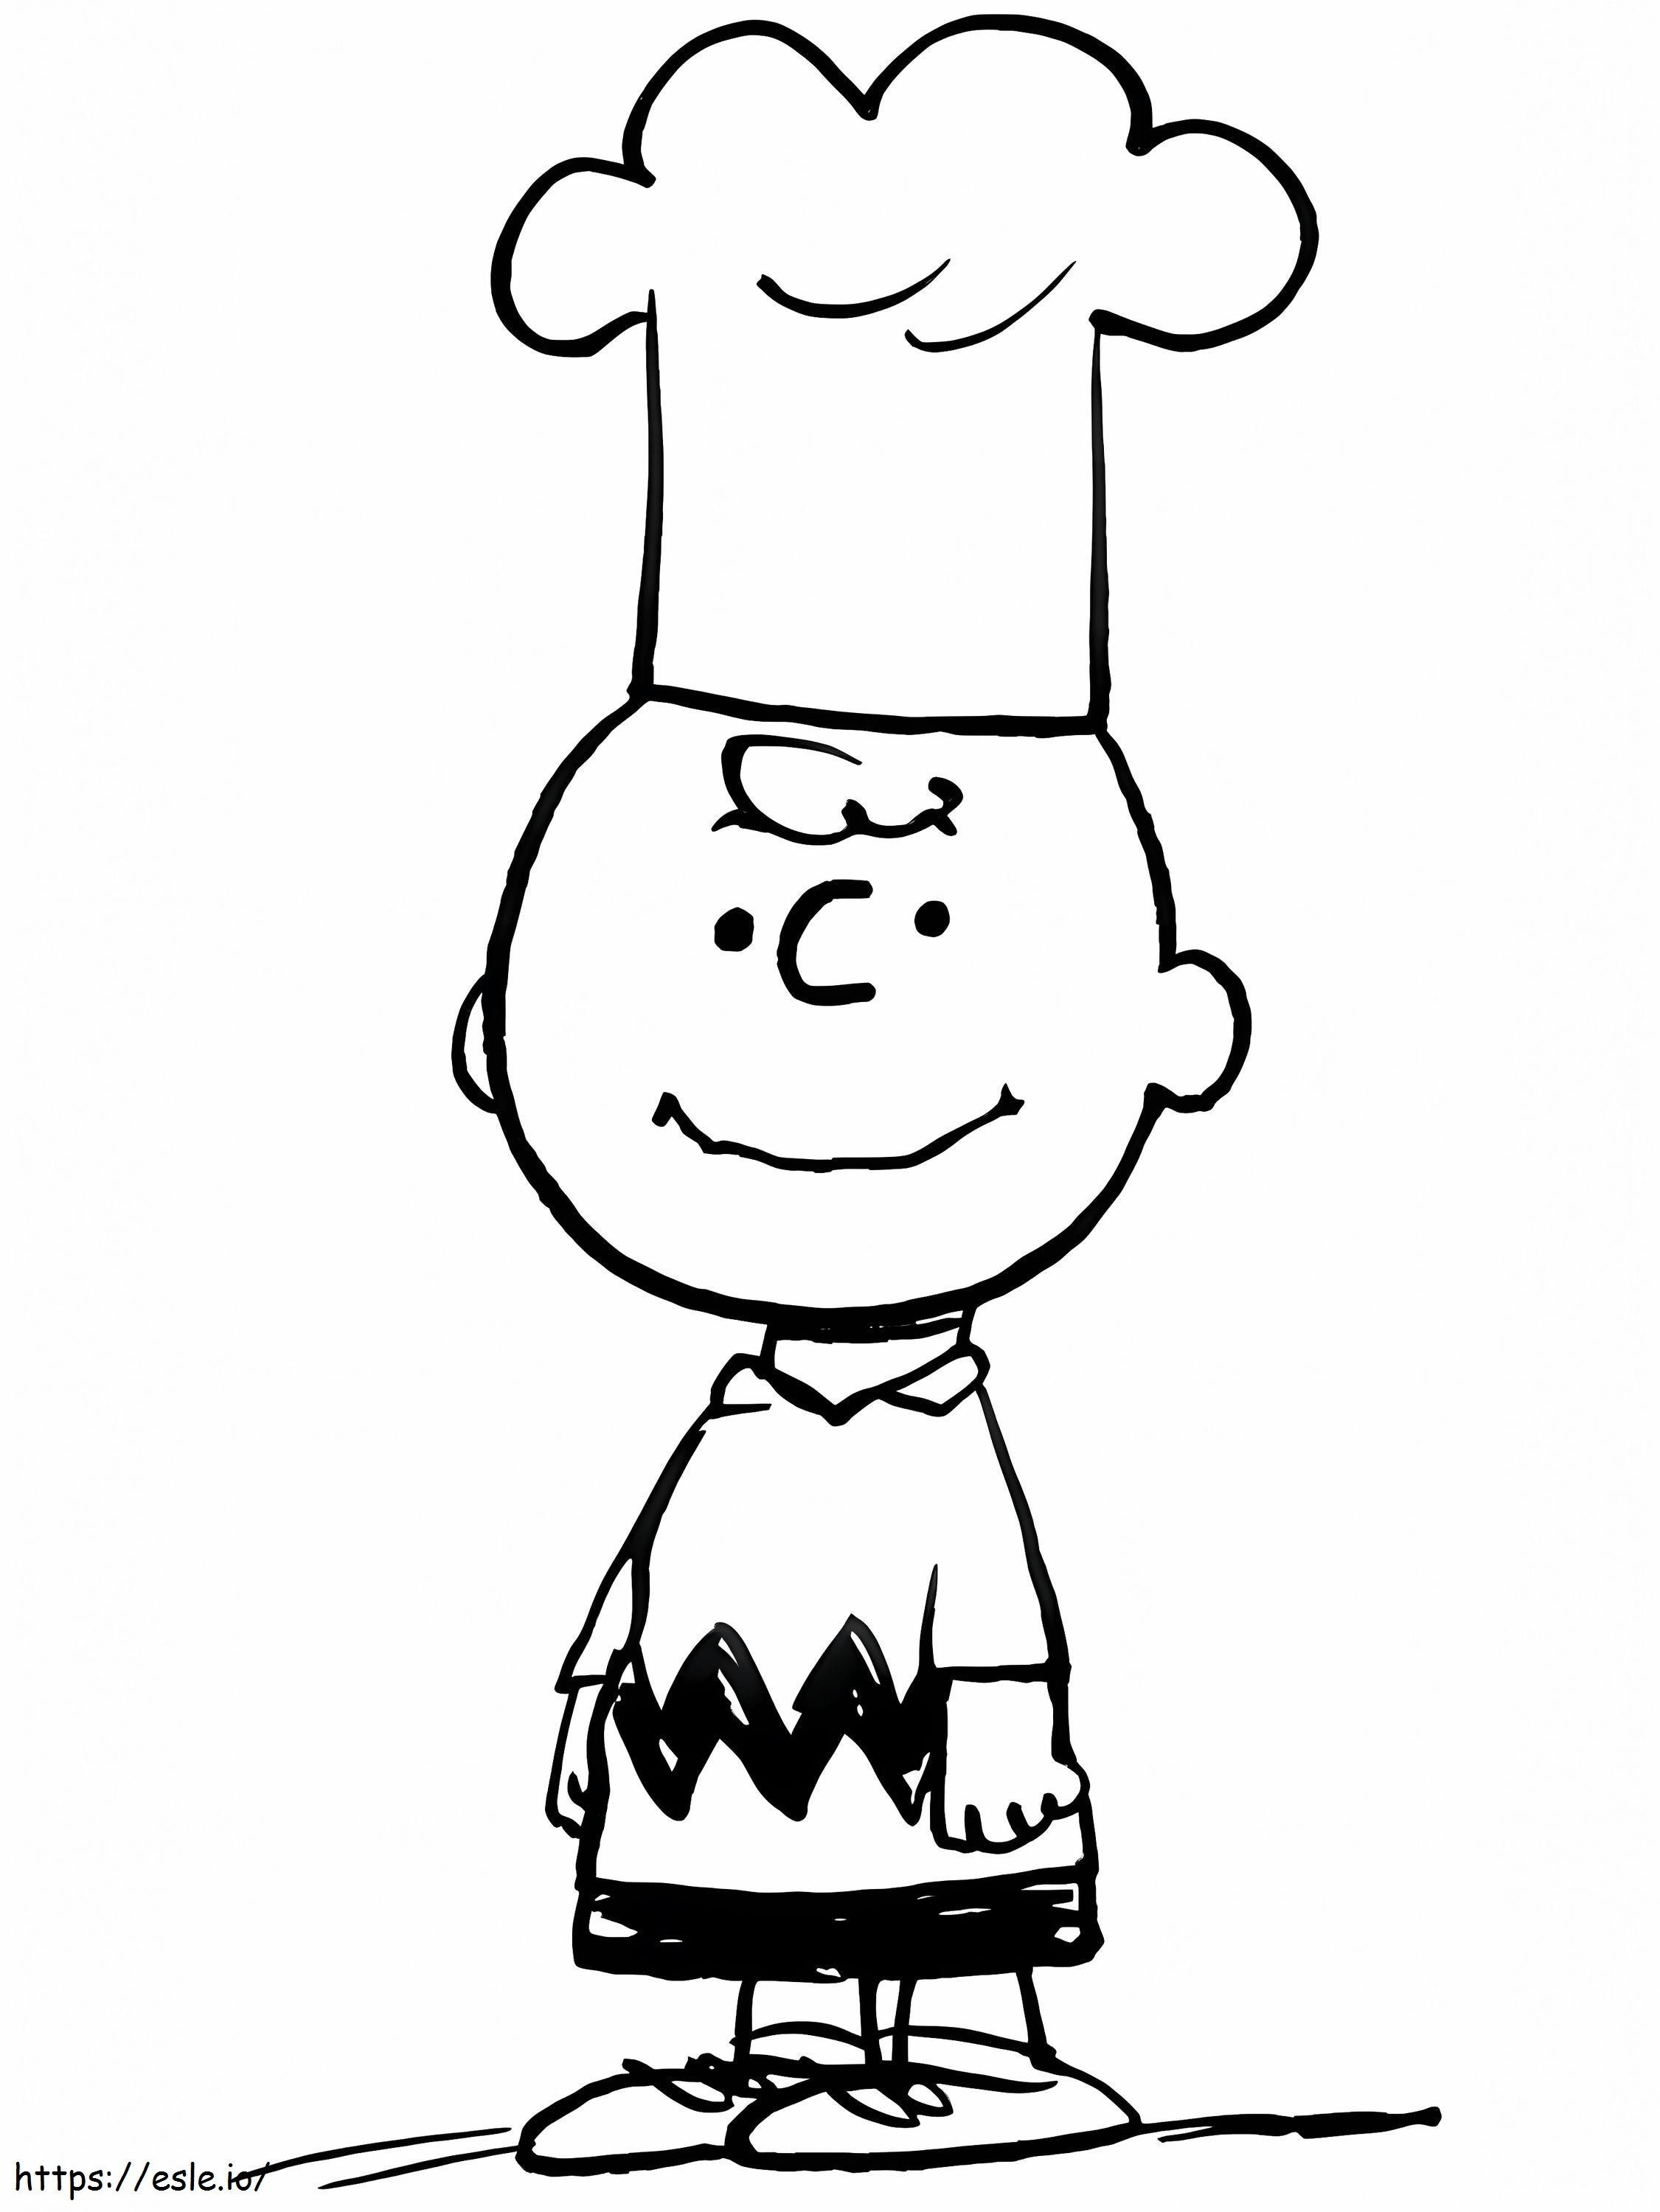 Charlie Brown Cook ausmalbilder